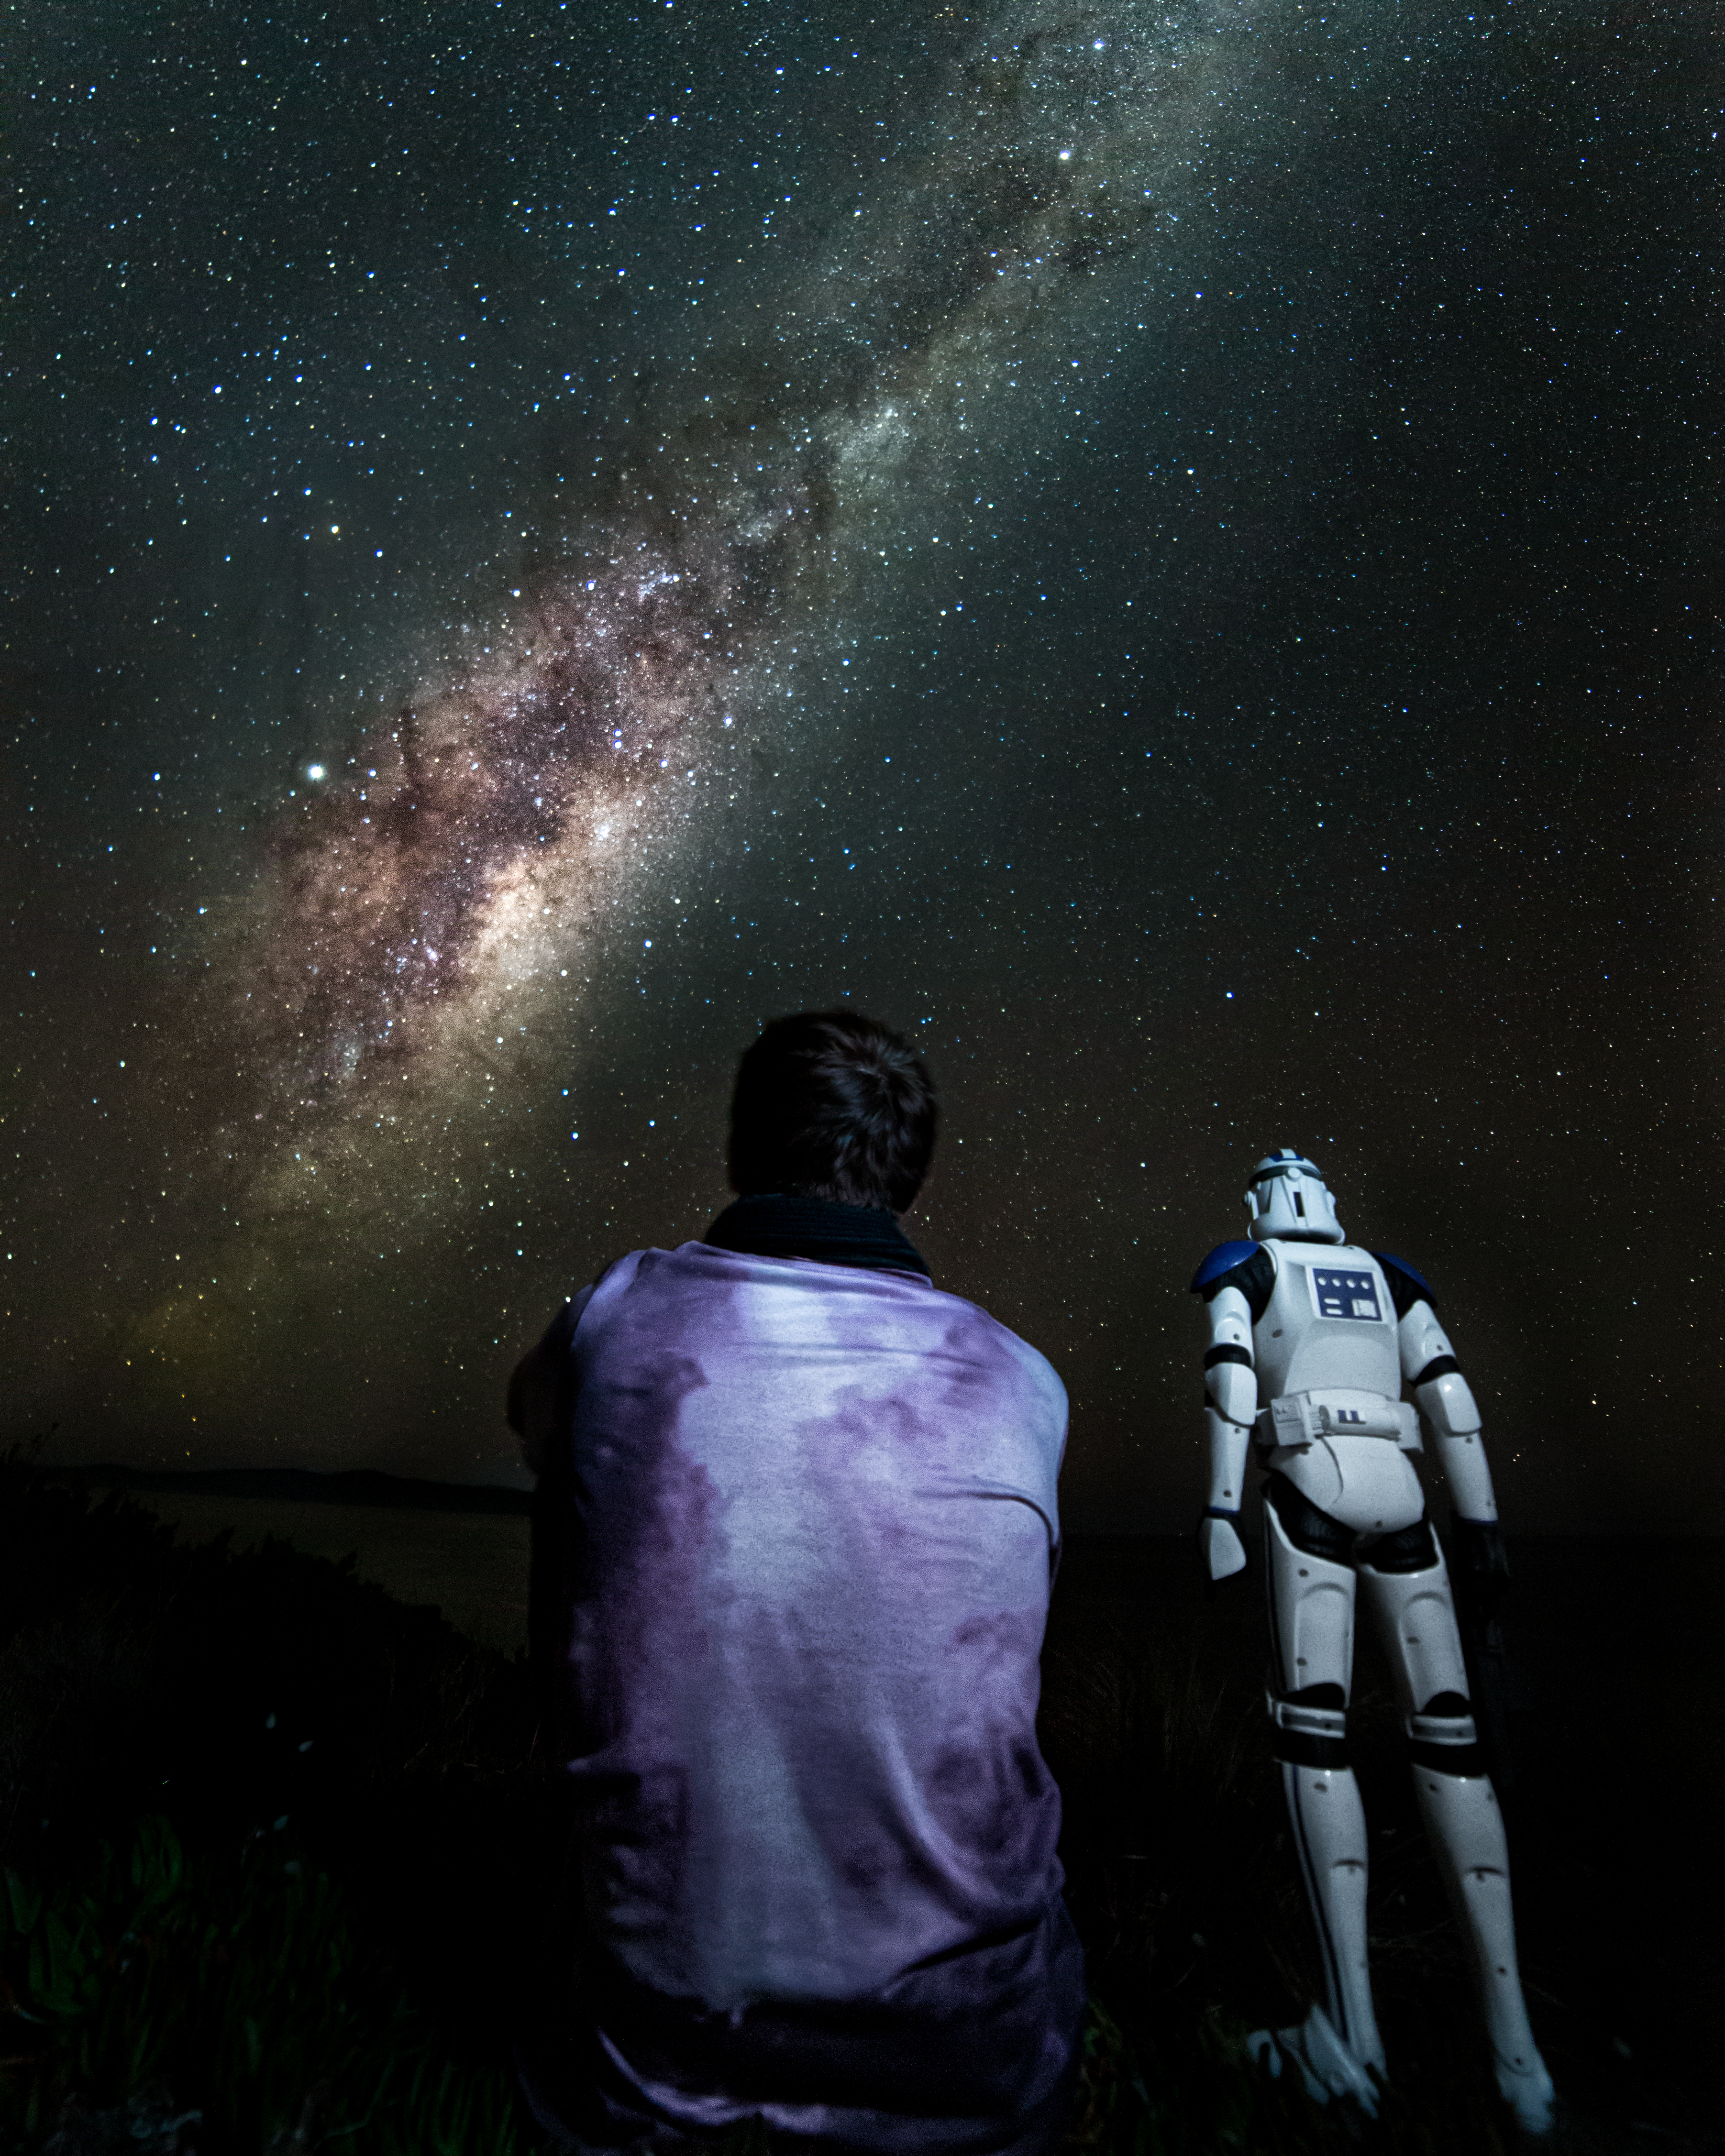 Long Exposure Milky Way Light Painting Landscape Figurines Star Wars Heroes Clone Trooper Tasmania 3606x4508